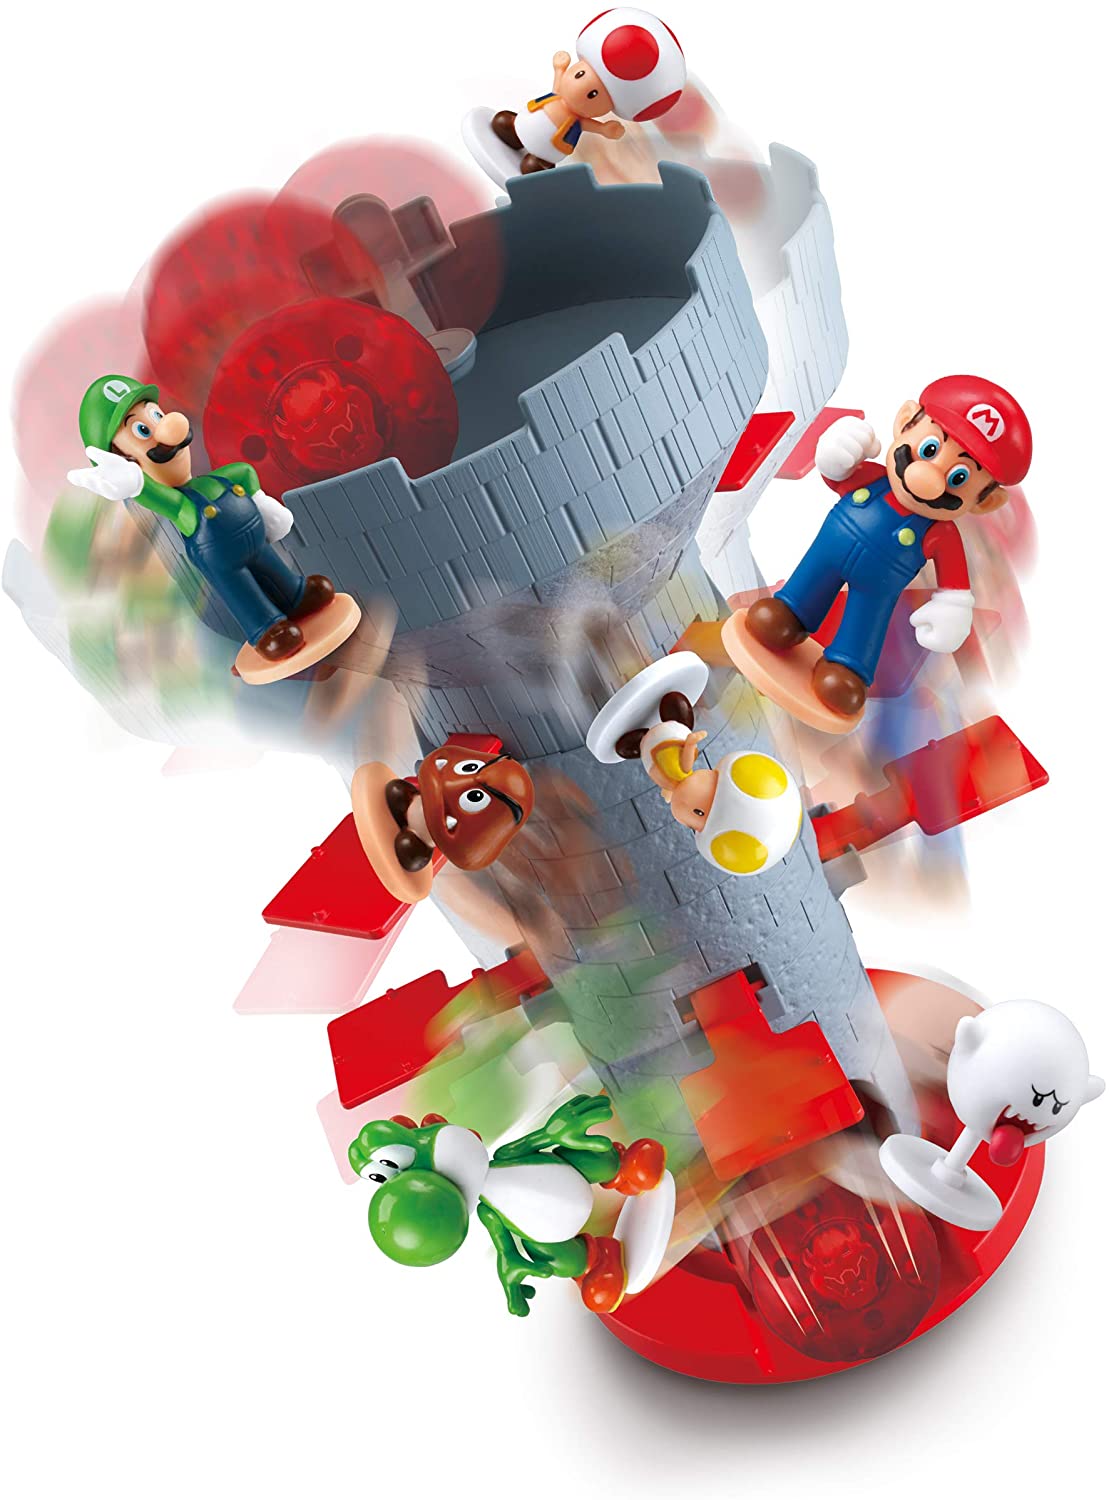 Shaky Tower Balancierspiel jeu Super Mario Games Jeux de société Blow Up